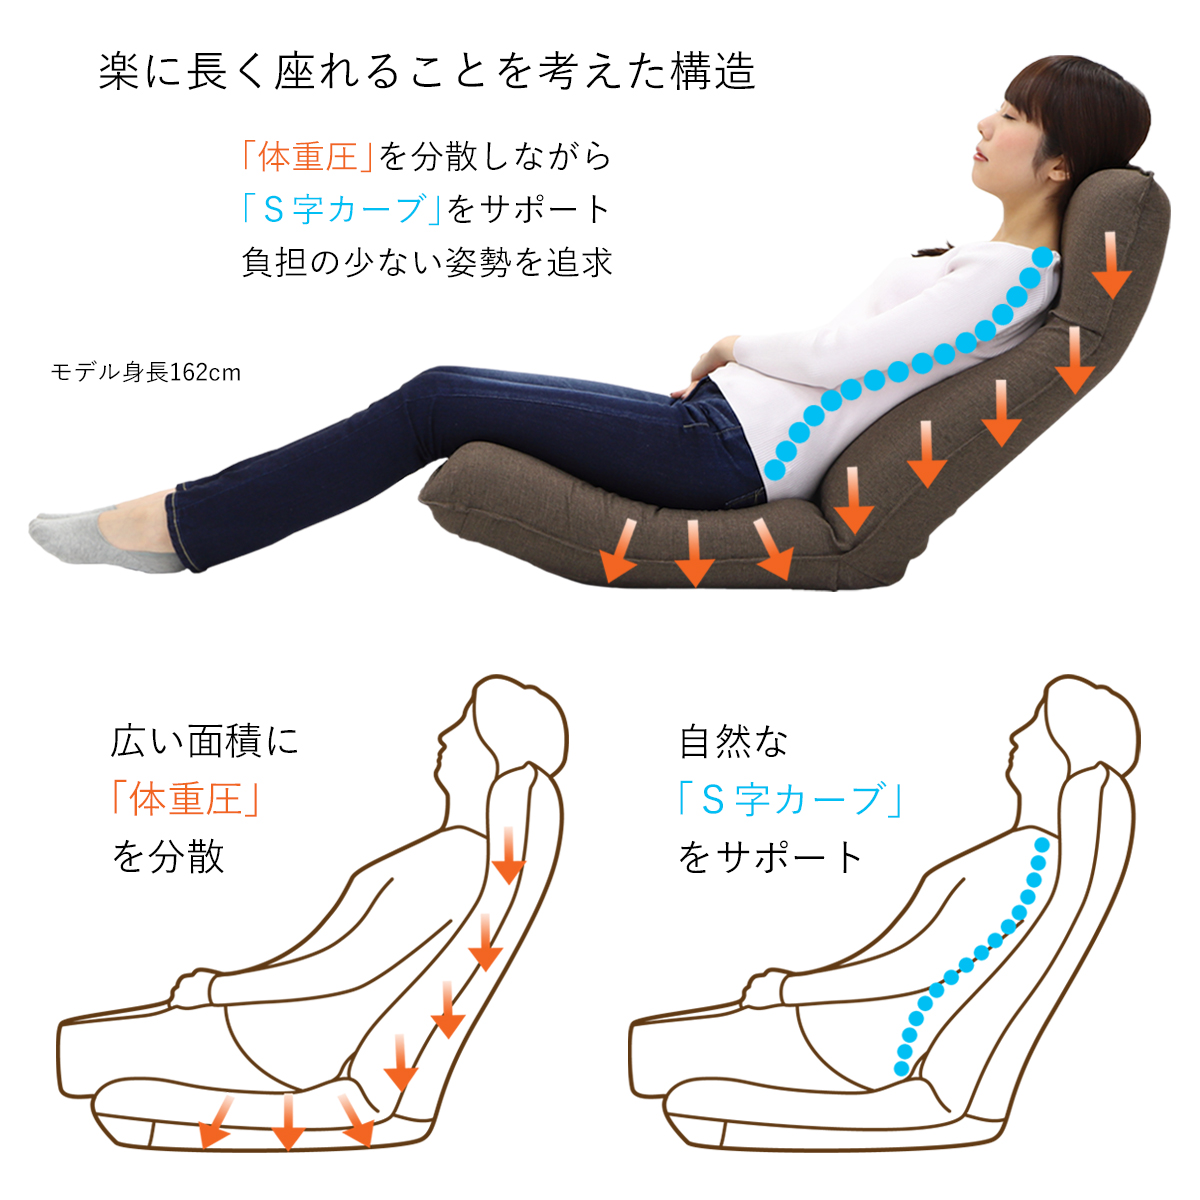 産学連携 リラックス座椅子4-M 《スタンダード》 日本製 ヤマザキ